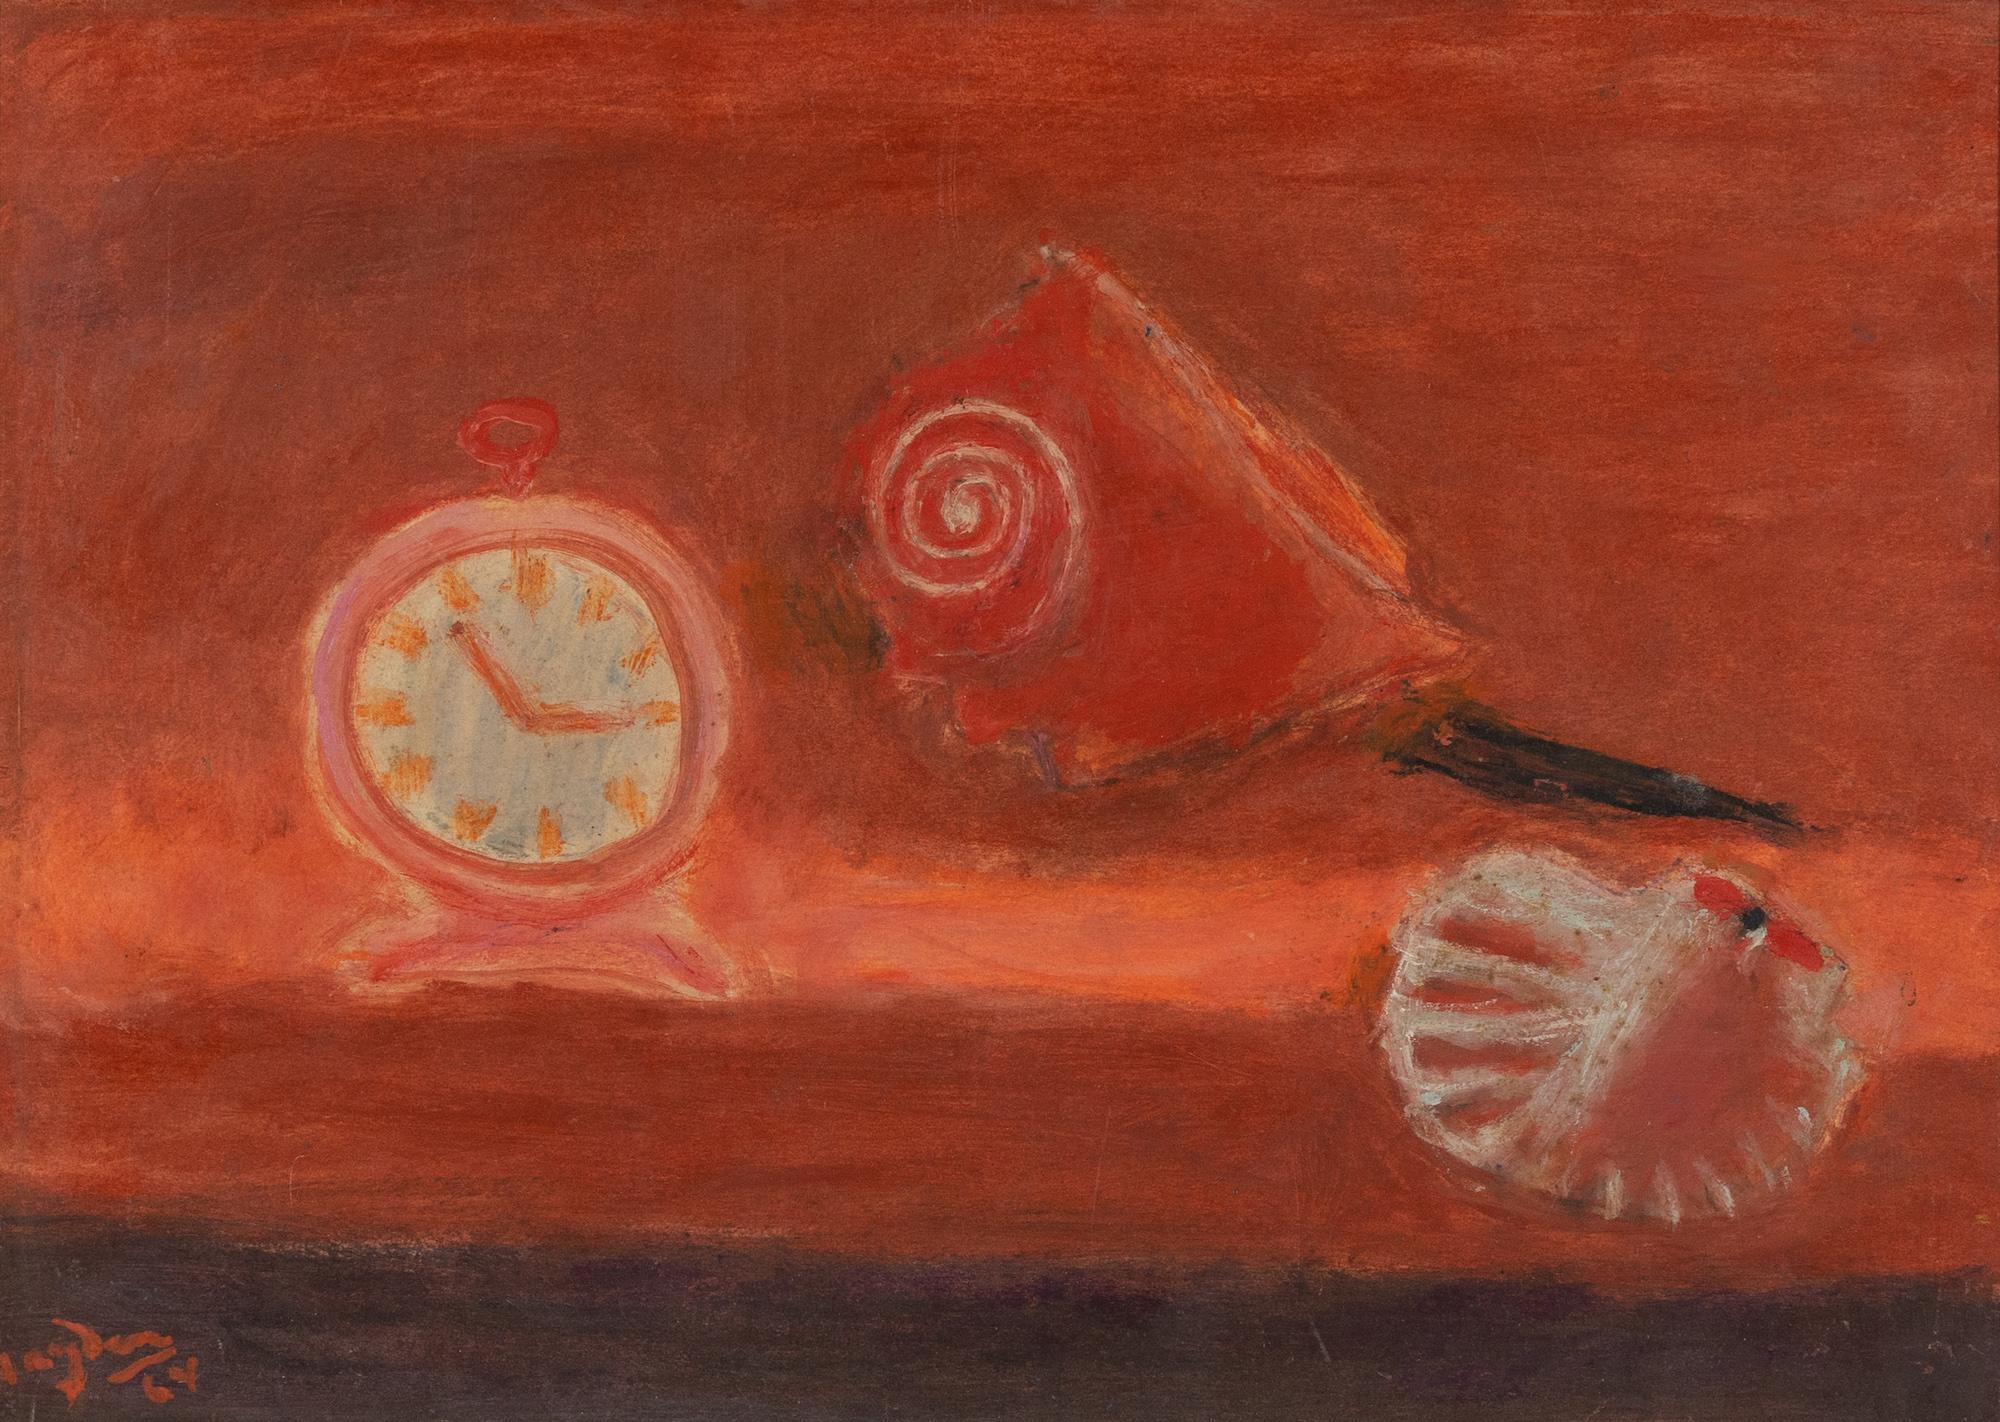 Coquillage et réveil en rouge par Henri Hayden (1883-1970)
Huile sur papier posé sur isorel
33,5 x 46 cm (13 ¹/₄ x 18 ¹/₈ pouces)
Signé et daté en bas à gauche, Hayden 64

Cette œuvre est accompagnée d'un certificat d'authenticité de Laurence Le